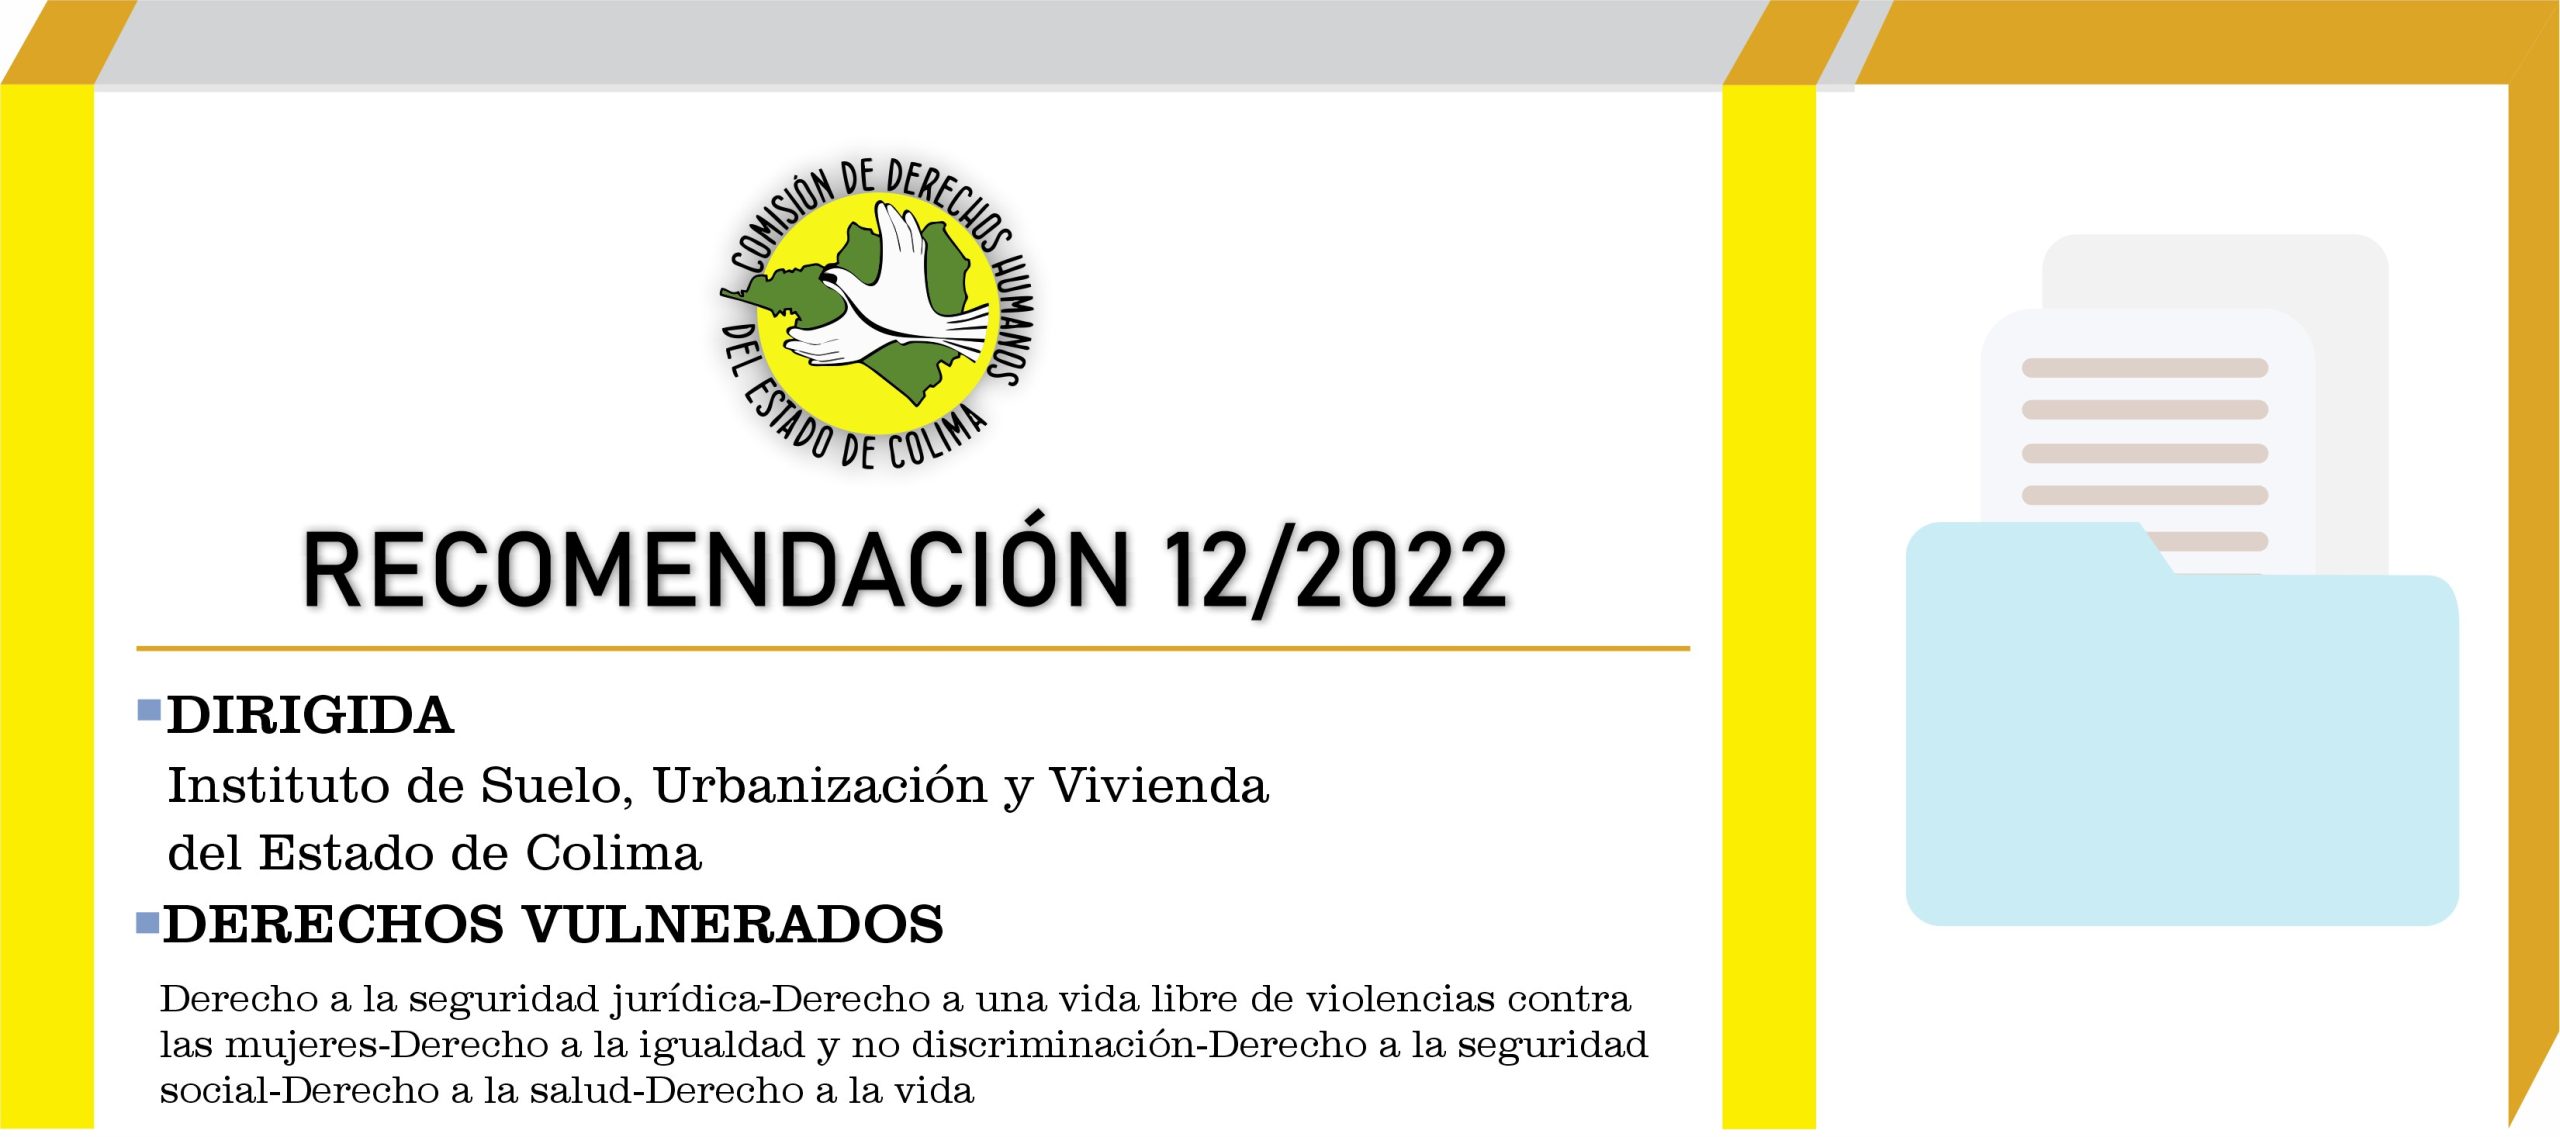 Emite CDHEC Recomendación al Instituto de Suelo, Urbanización y Vivienda del Estado de Colima